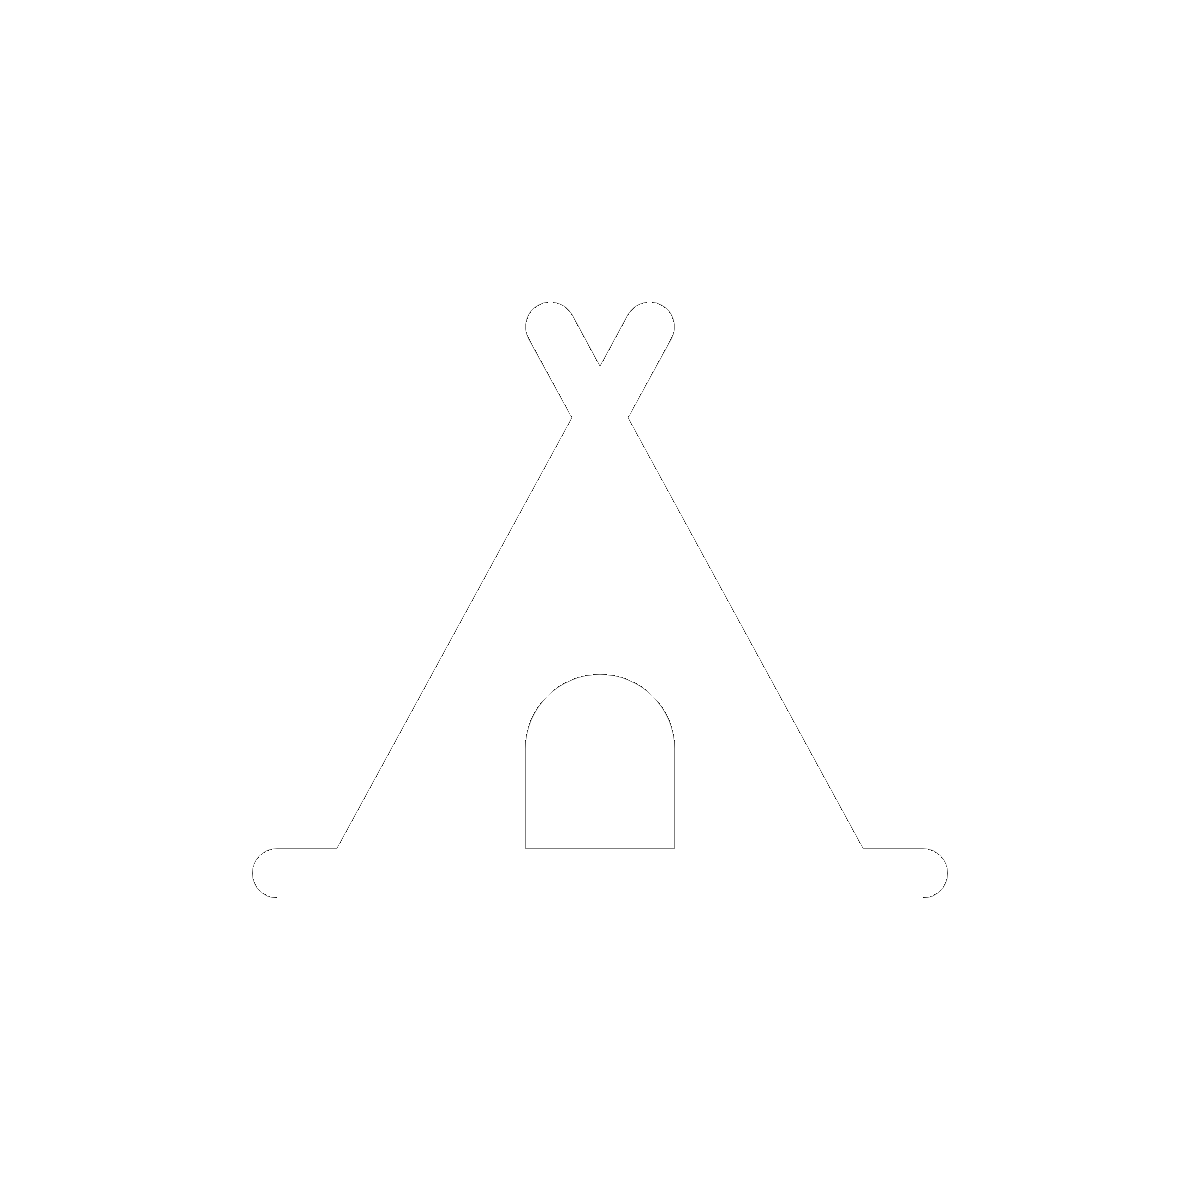 Symbol Campsites/Campfires